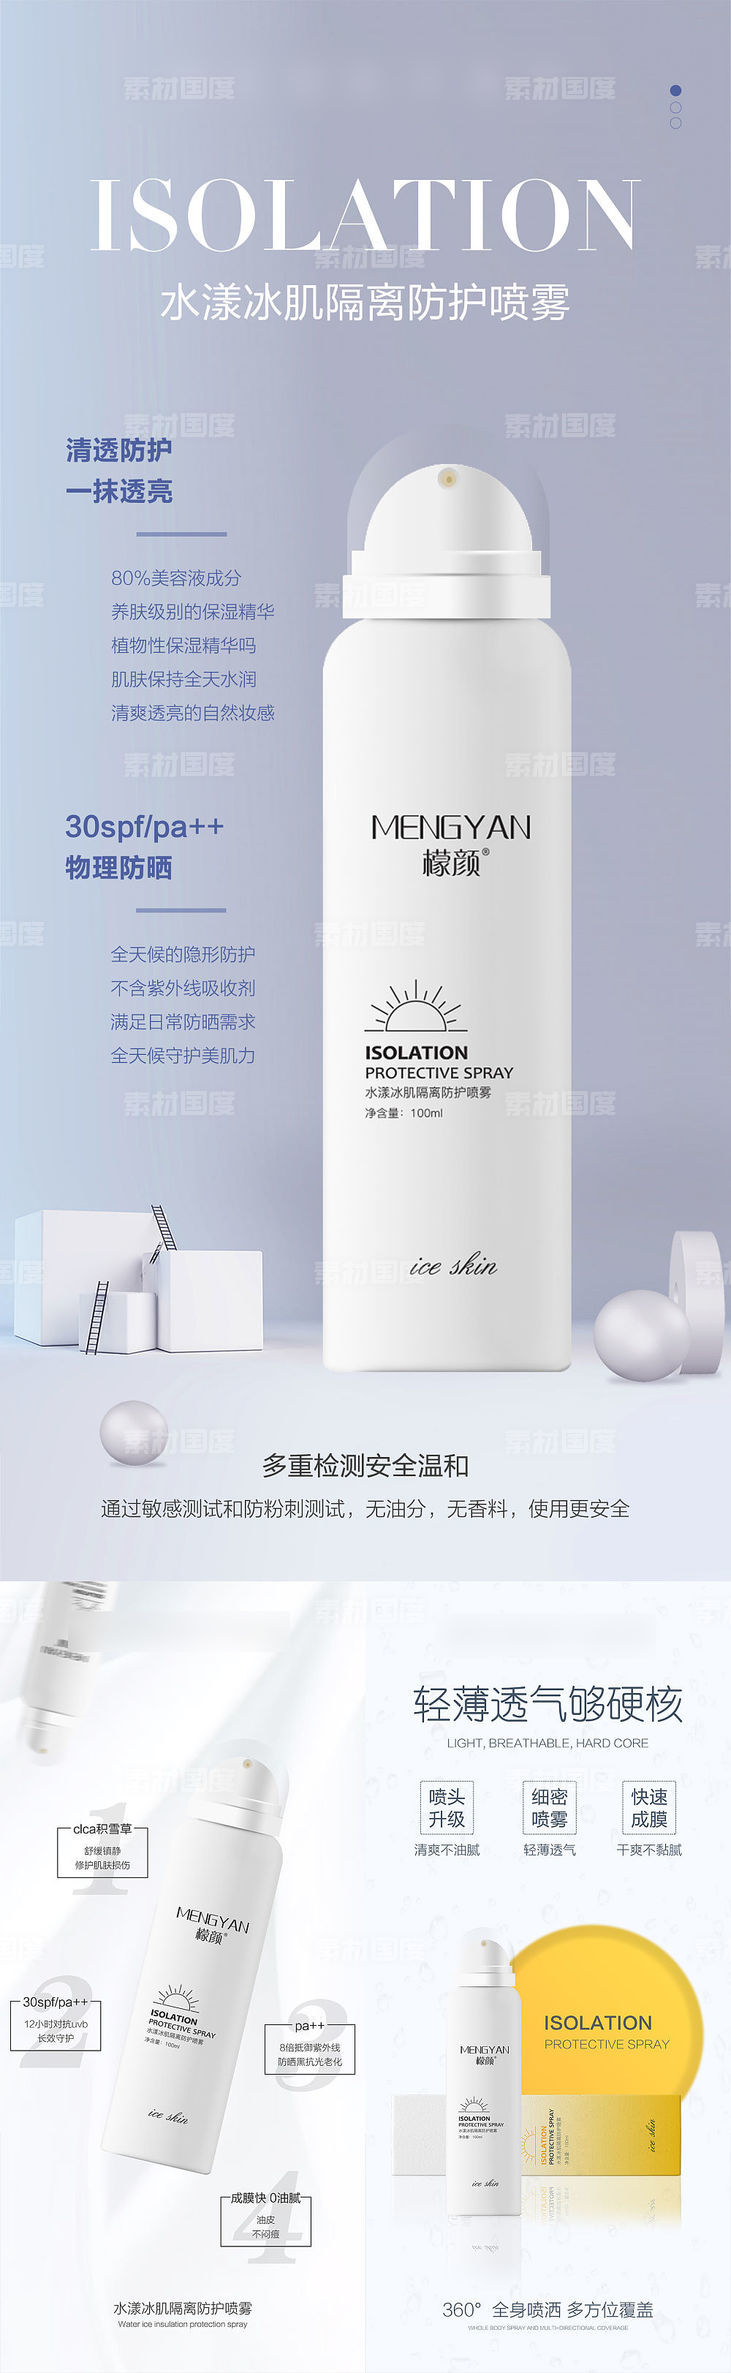 微商护肤防晒霜保湿美白产品系列海报